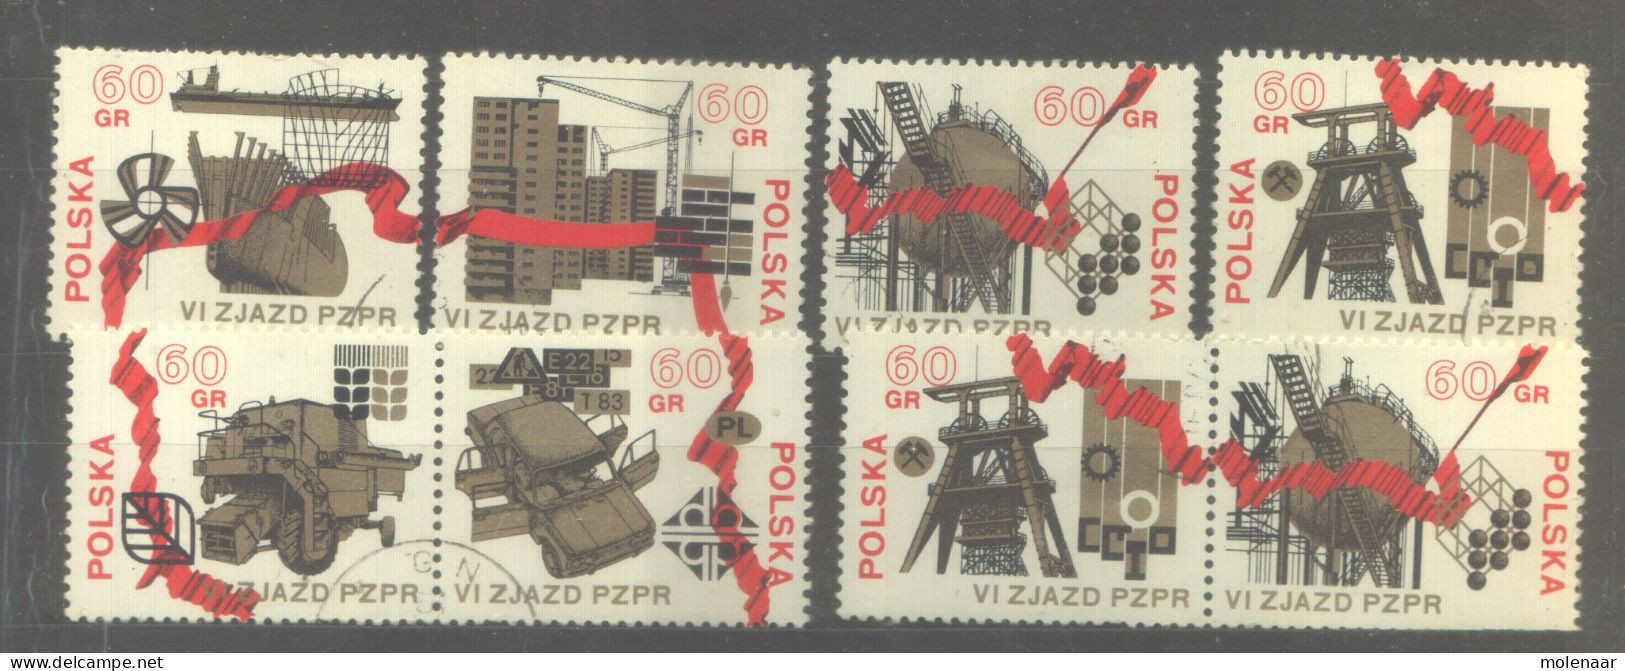 Postzegels > Europa > Polen > 1944-.... Republiek > 1971-80 > Gebruikt 2120-2125 (12061) - Used Stamps